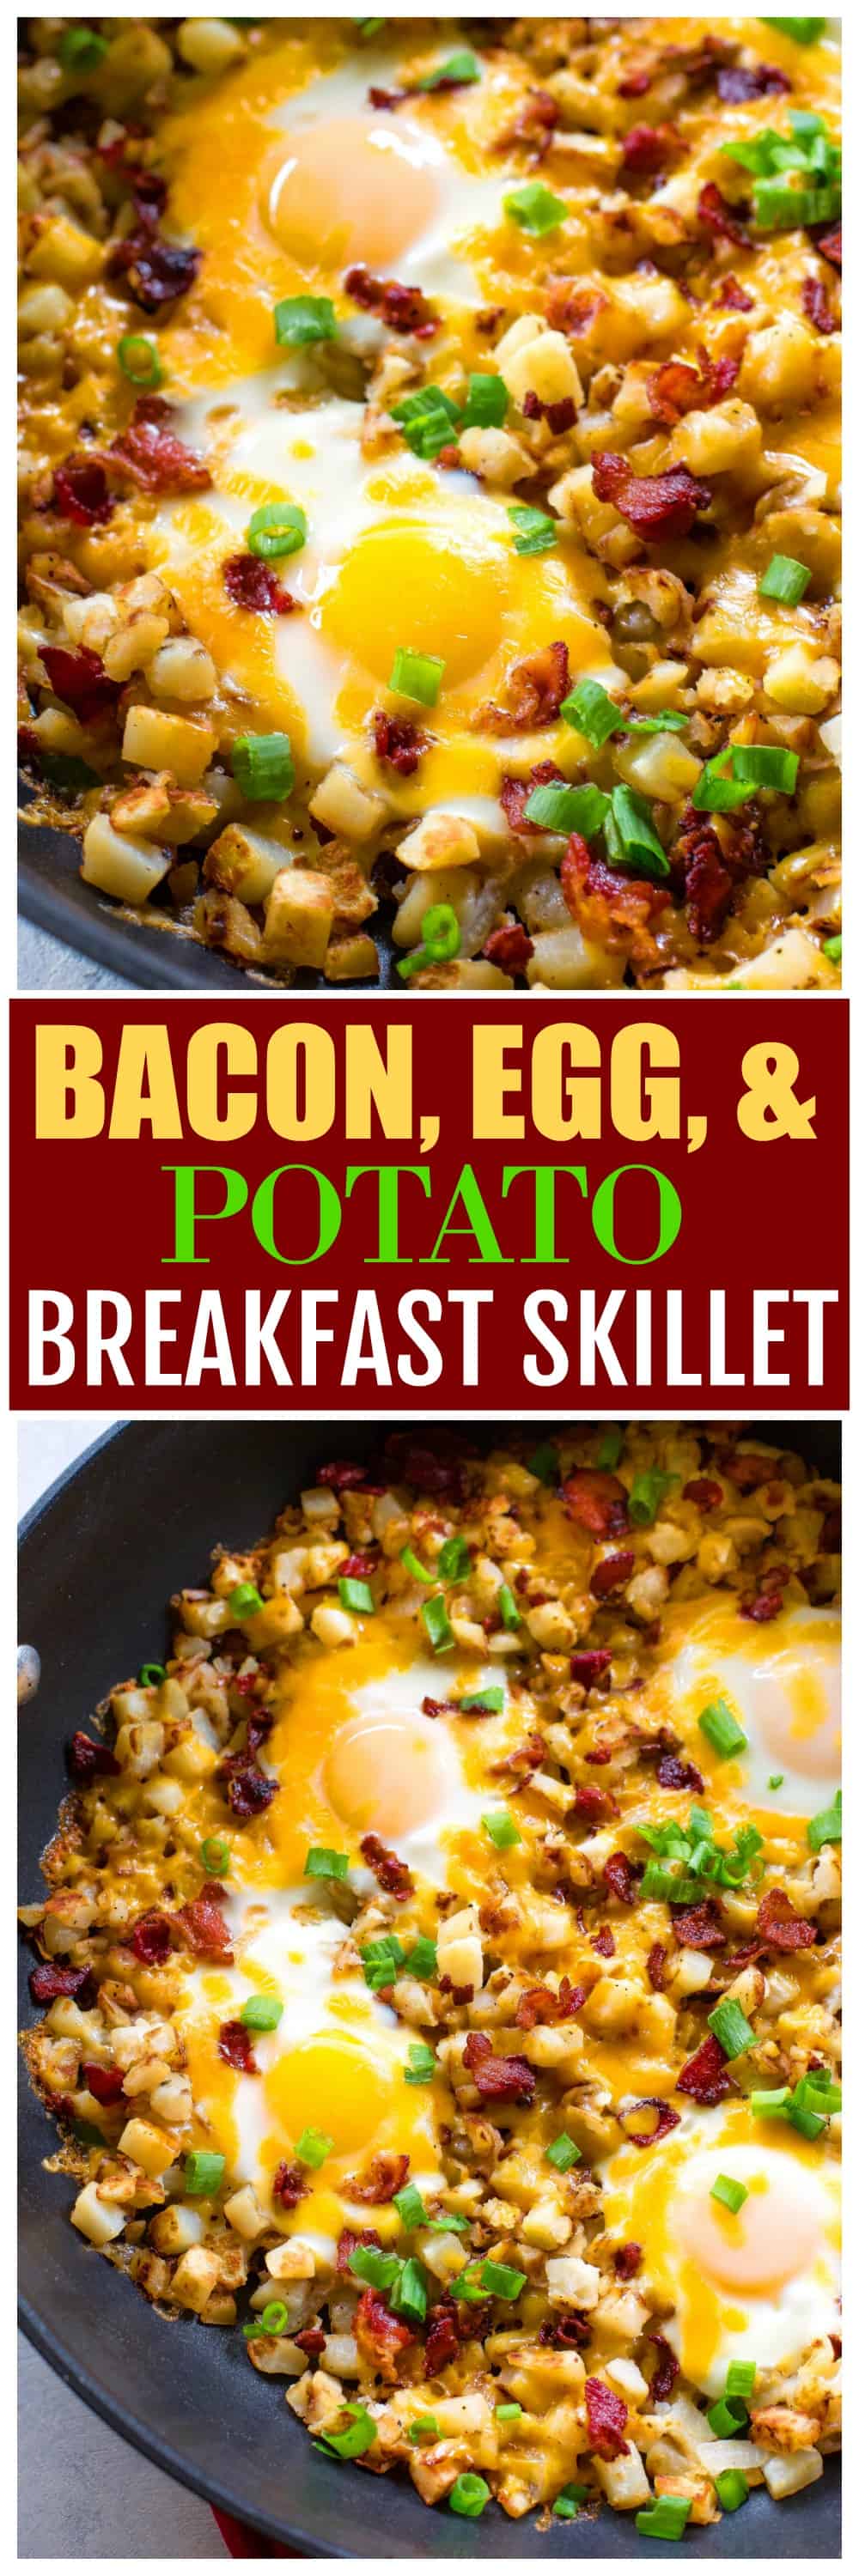 https://www.the-girl-who-ate-everything.com/wp-content/uploads/2018/09/bacon-egg-potato-breakfast-skillet-1.jpg